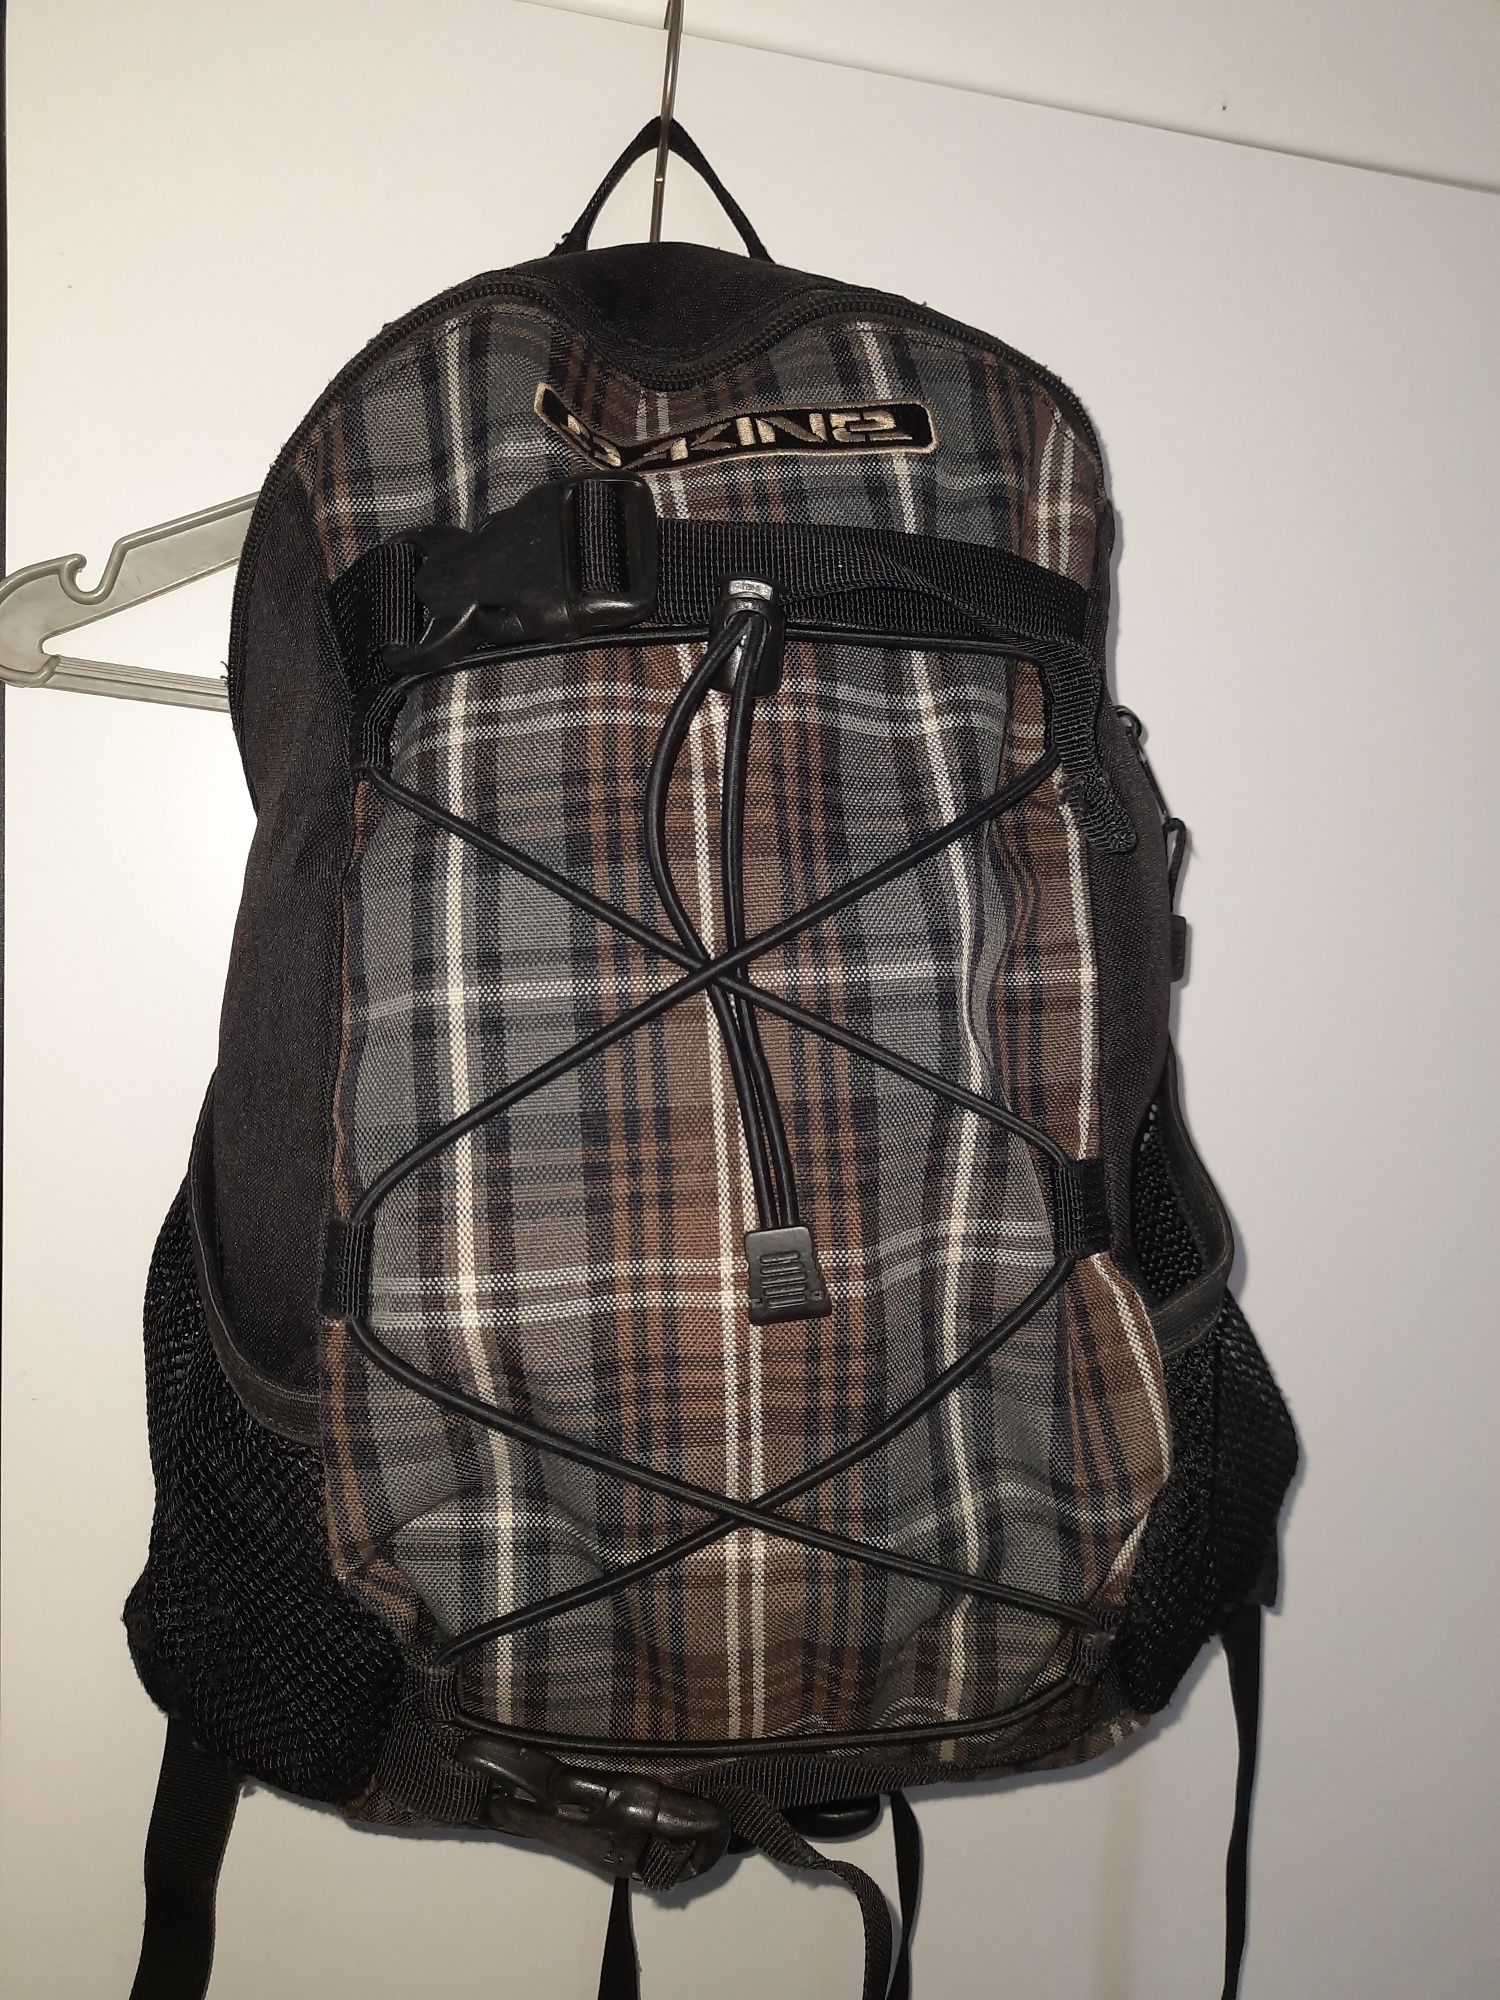 Plecak Dakine Wonde 15 L wycieczkowy turystyczny szkolny do pracy